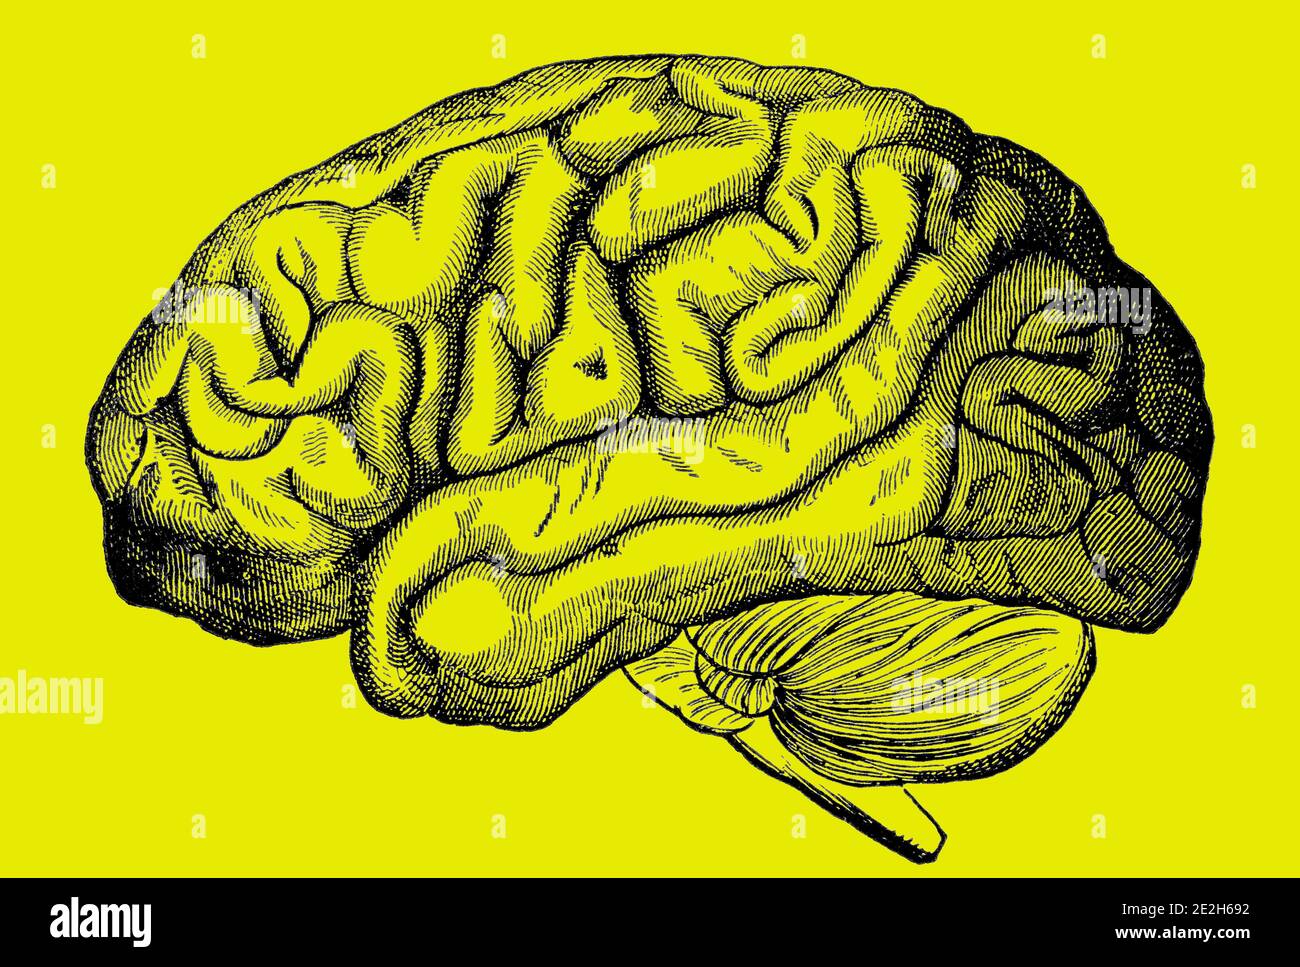 Ein eingraviertes Bild des menschlichen Gehirns aus einem viktorianischen Buch von 1880, das nicht mehr urheberrechtlich isoliert auf einem gelben Hintergrund ist, Stock-Foto-Bild Stockfoto